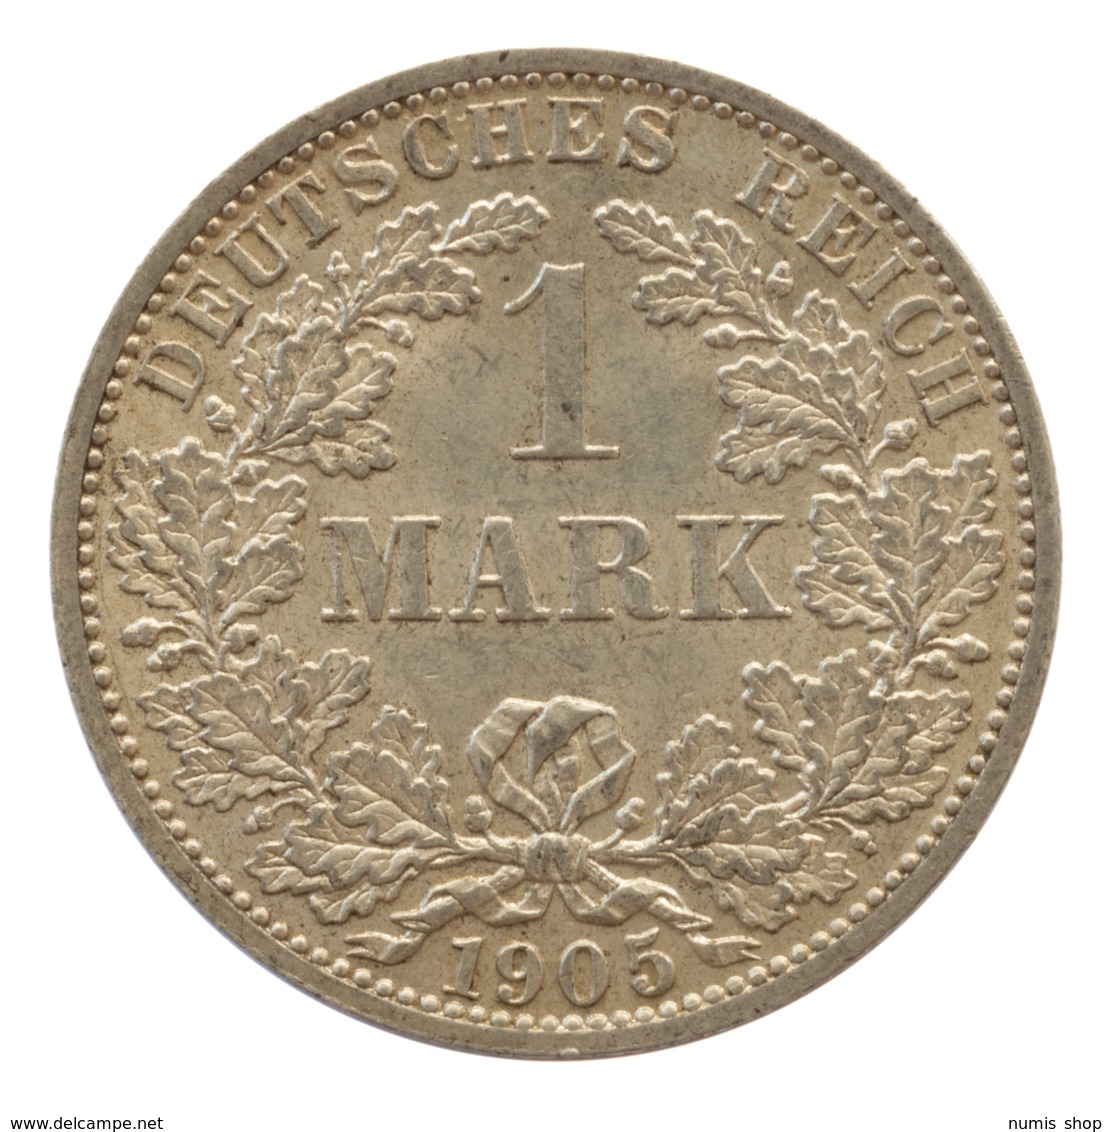 GERMANY - EMPIRE - 1 Mark - 1905 - A - Berlin - Silver - #DE051 - 1 Mark